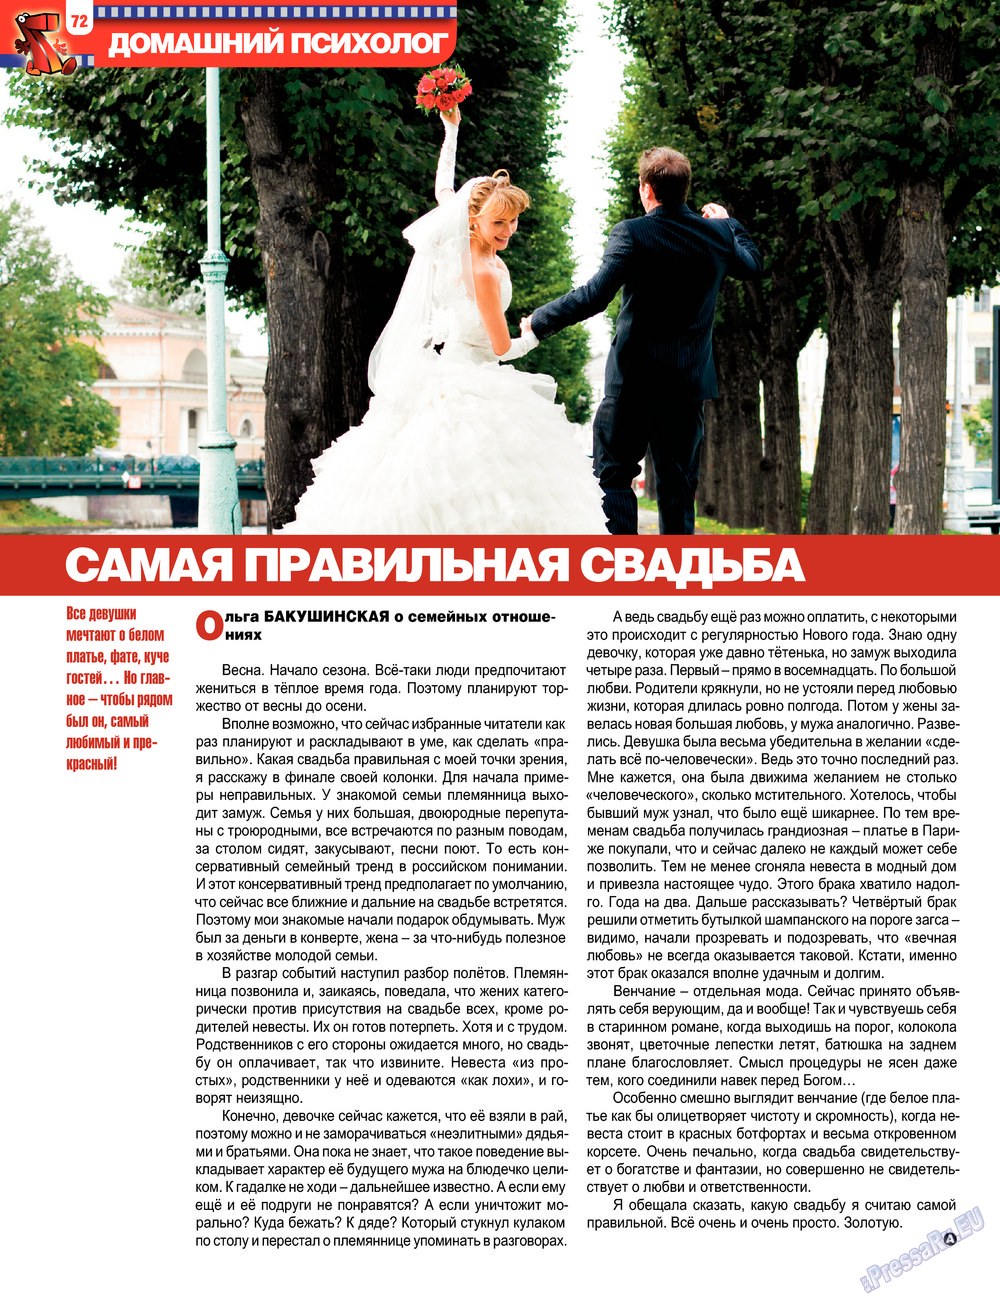 7плюс7я, журнал. 2013 №17 стр.72